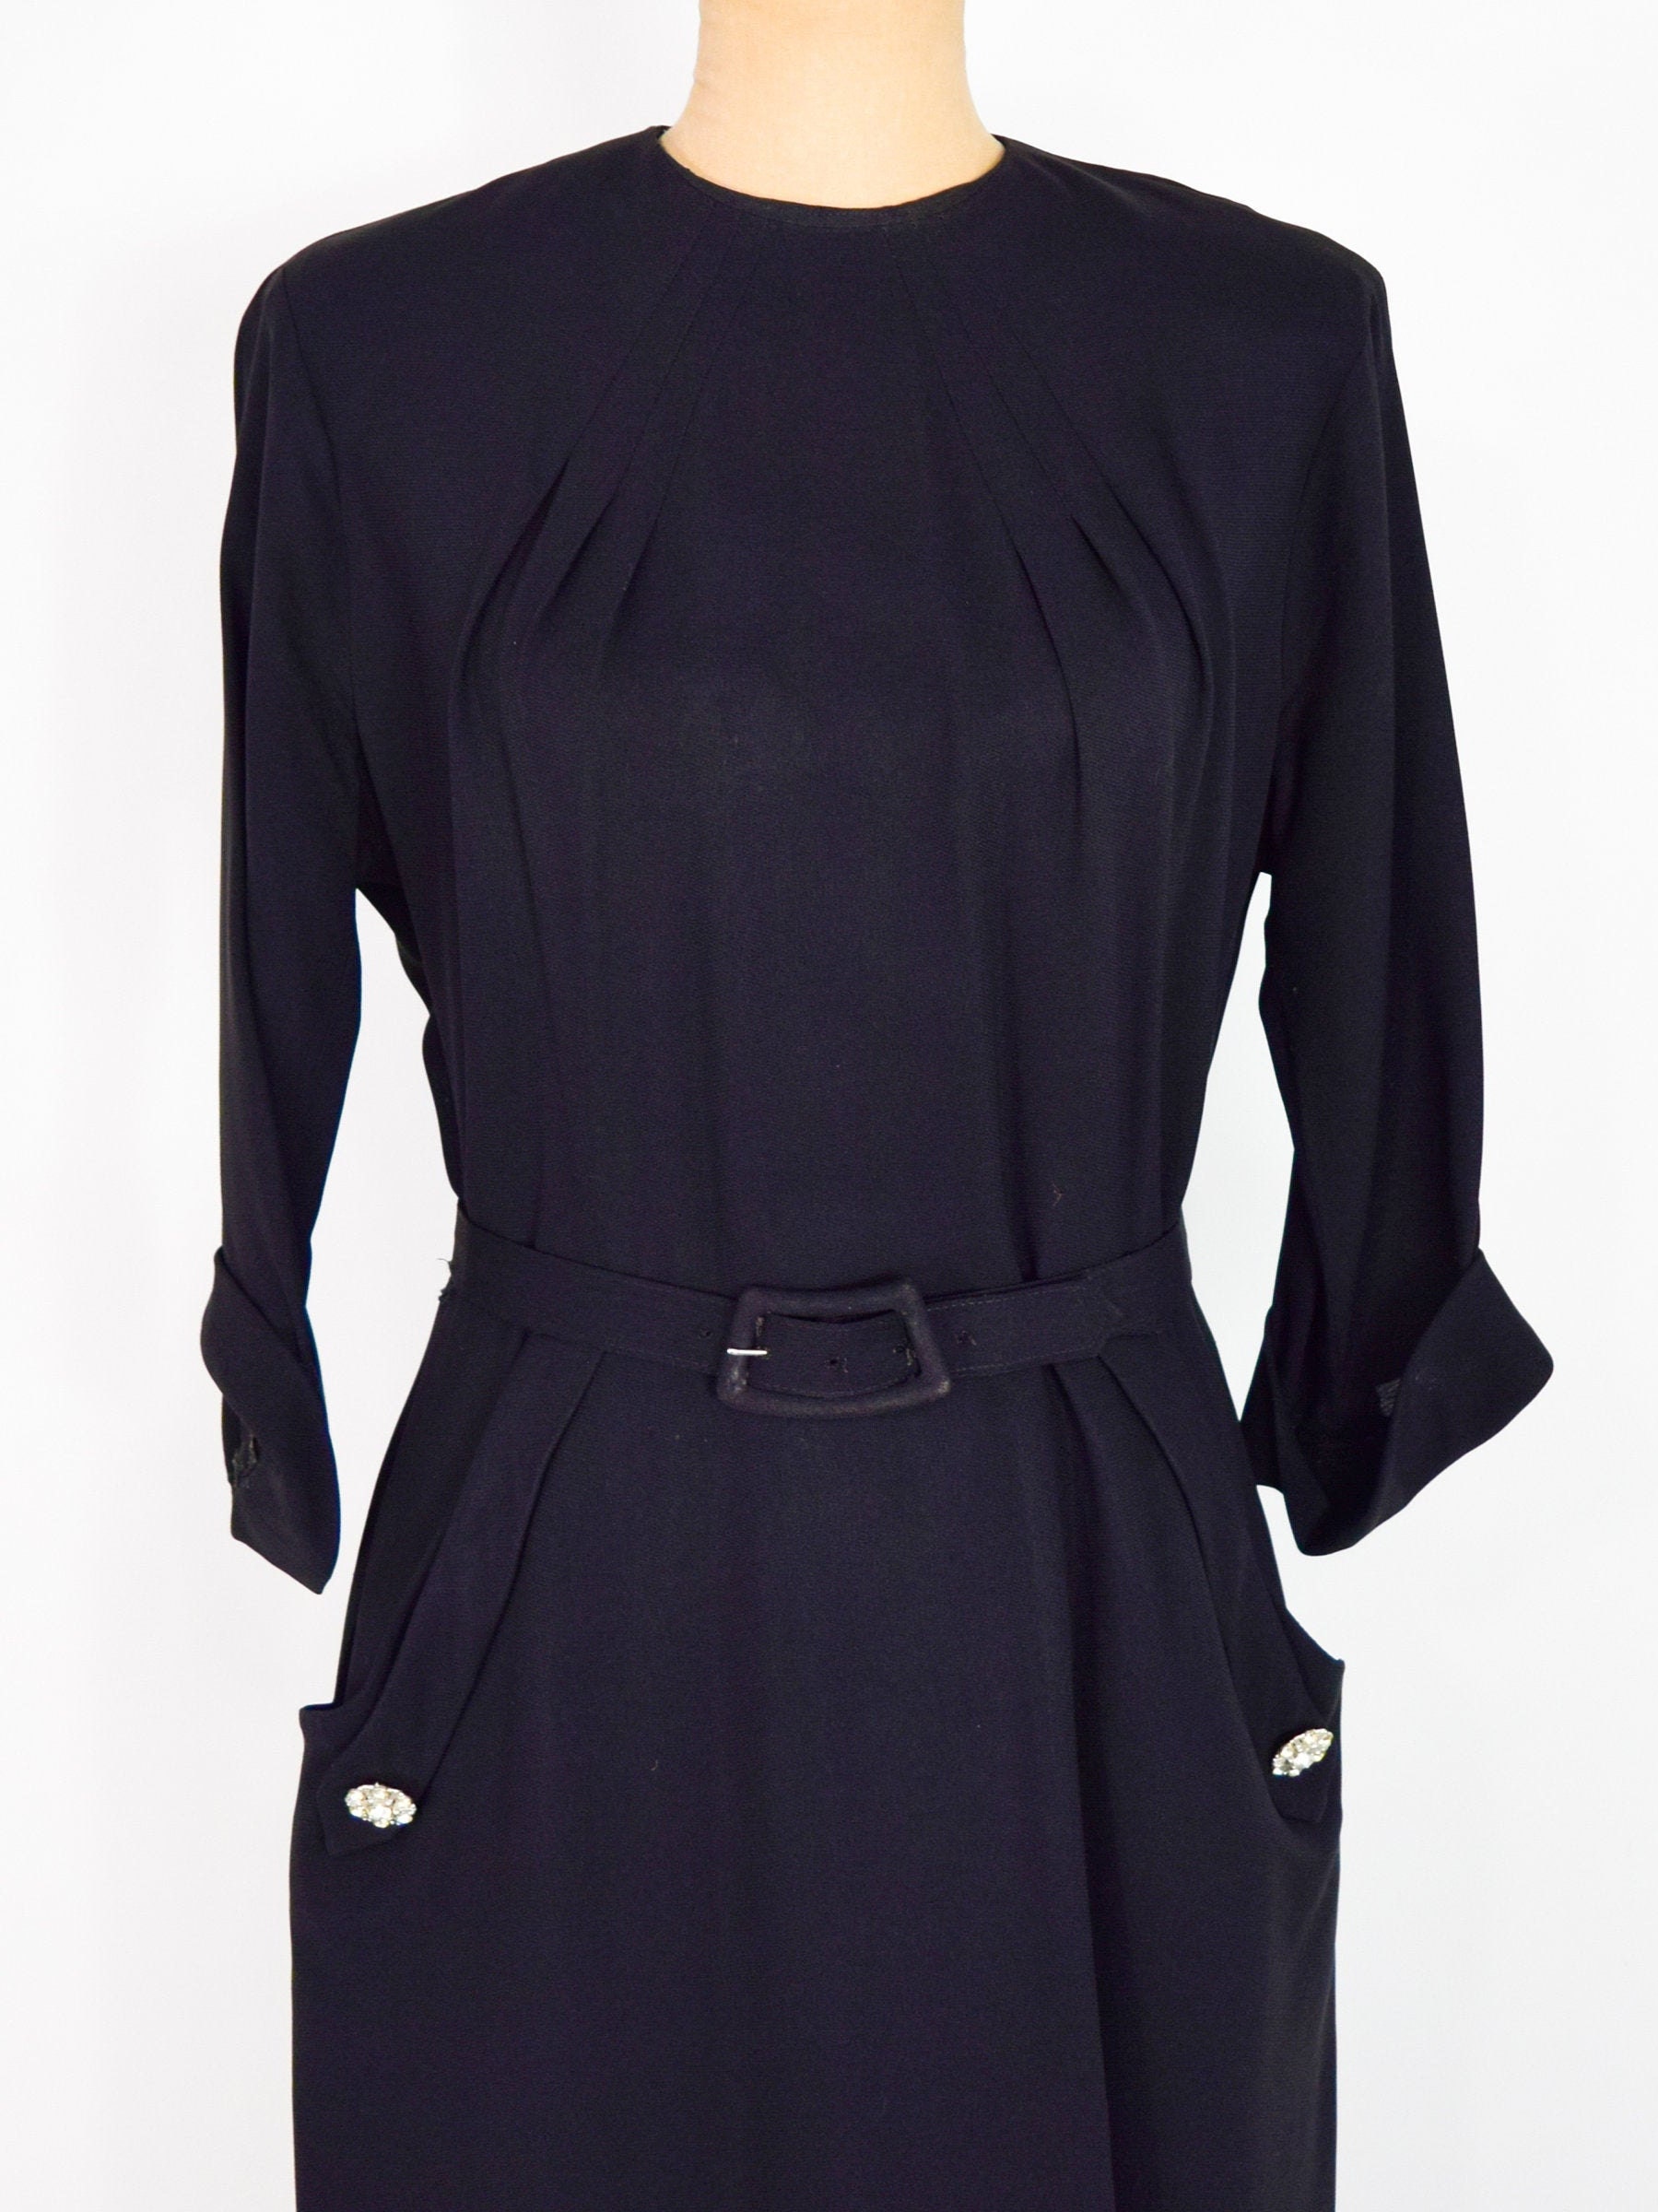 1940s Black Crepe Dress 40s Black Crepe Sheath Dress A Kay | Etsy